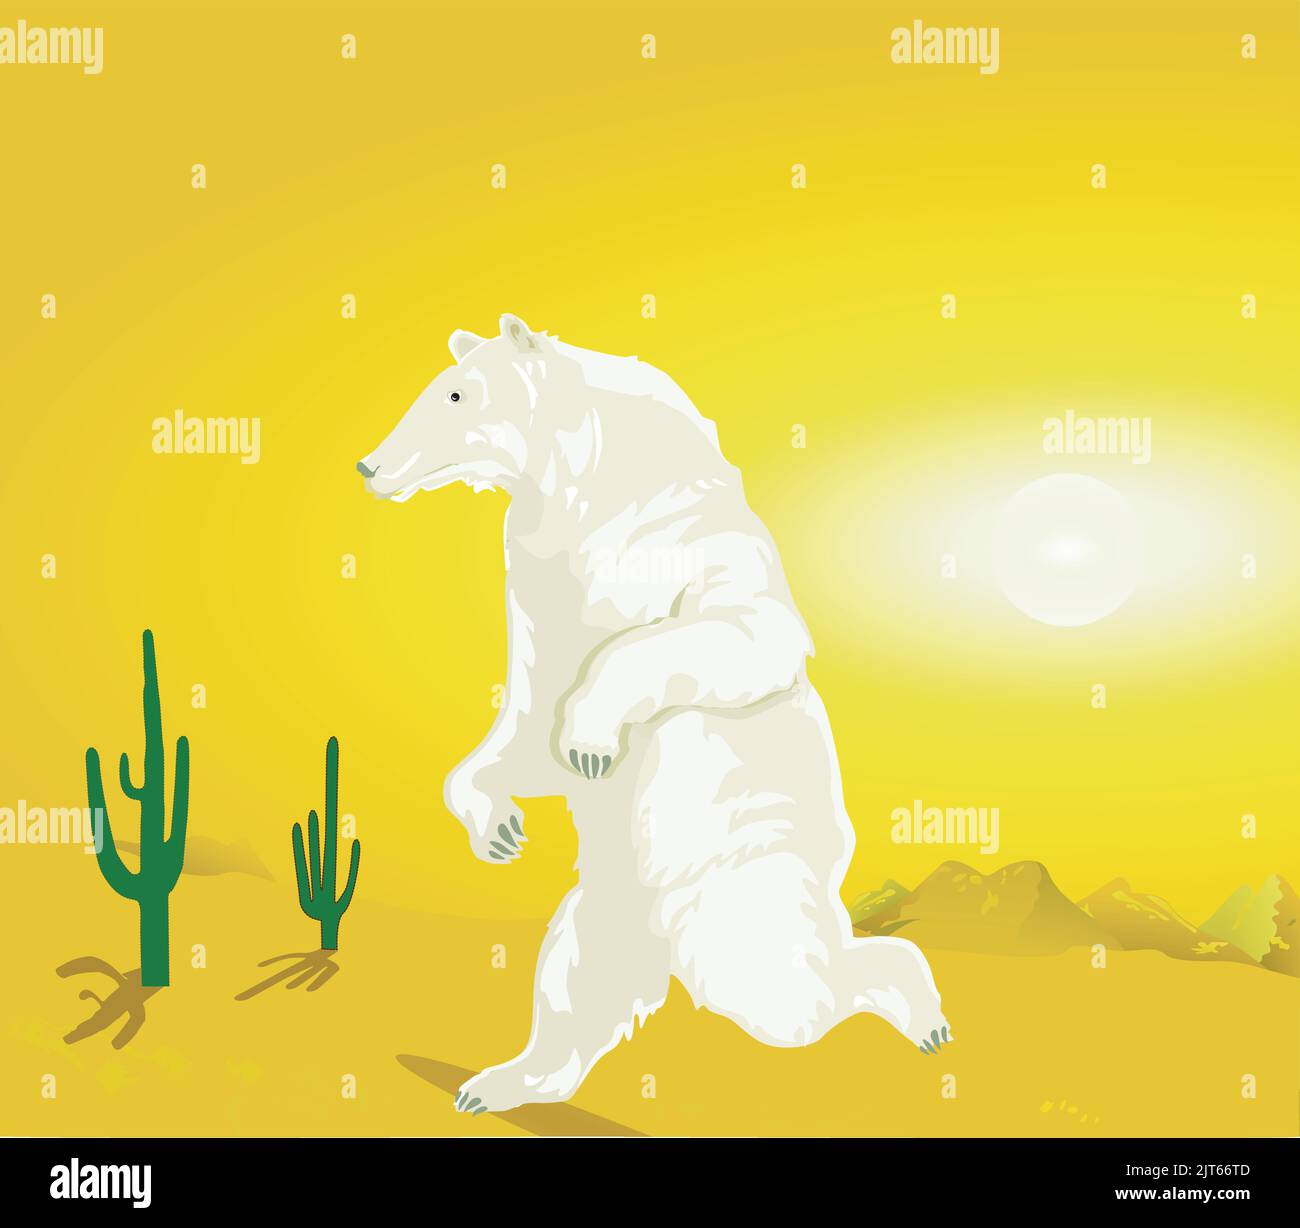 Orso polare nel deserto, illustrazione del riscaldamento globale Illustrazione Vettoriale